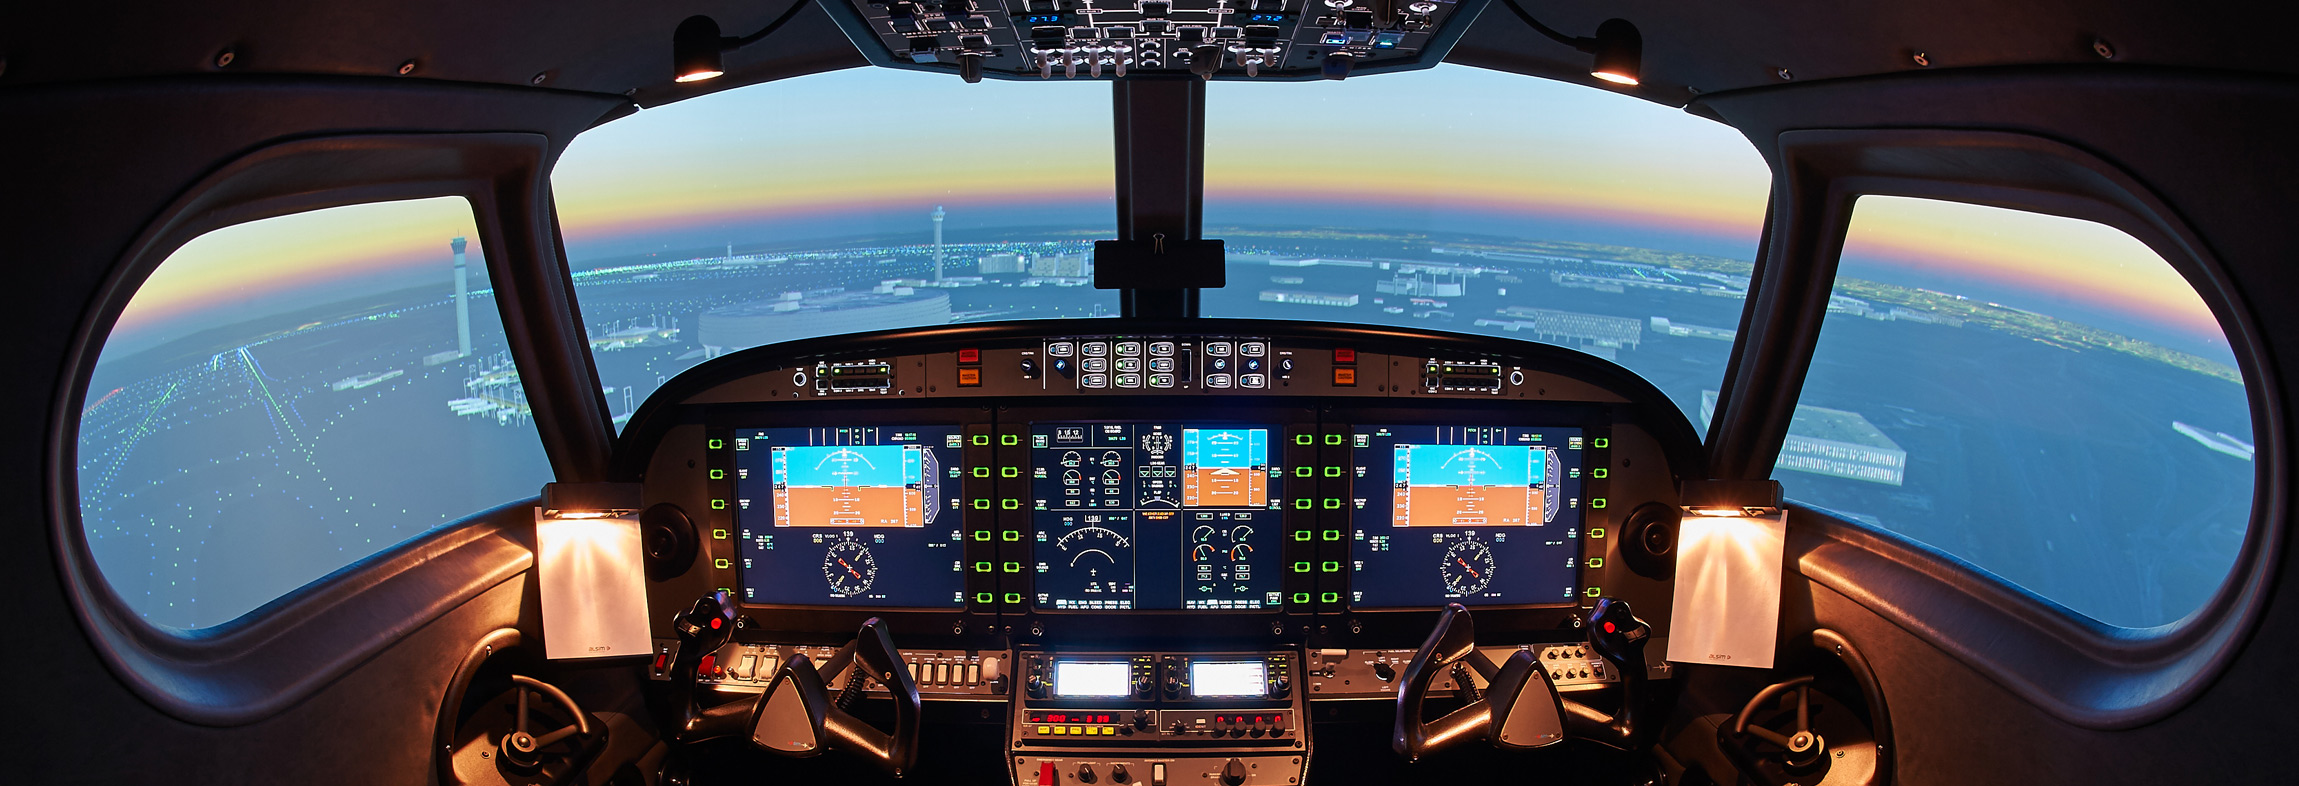 Flight simulators